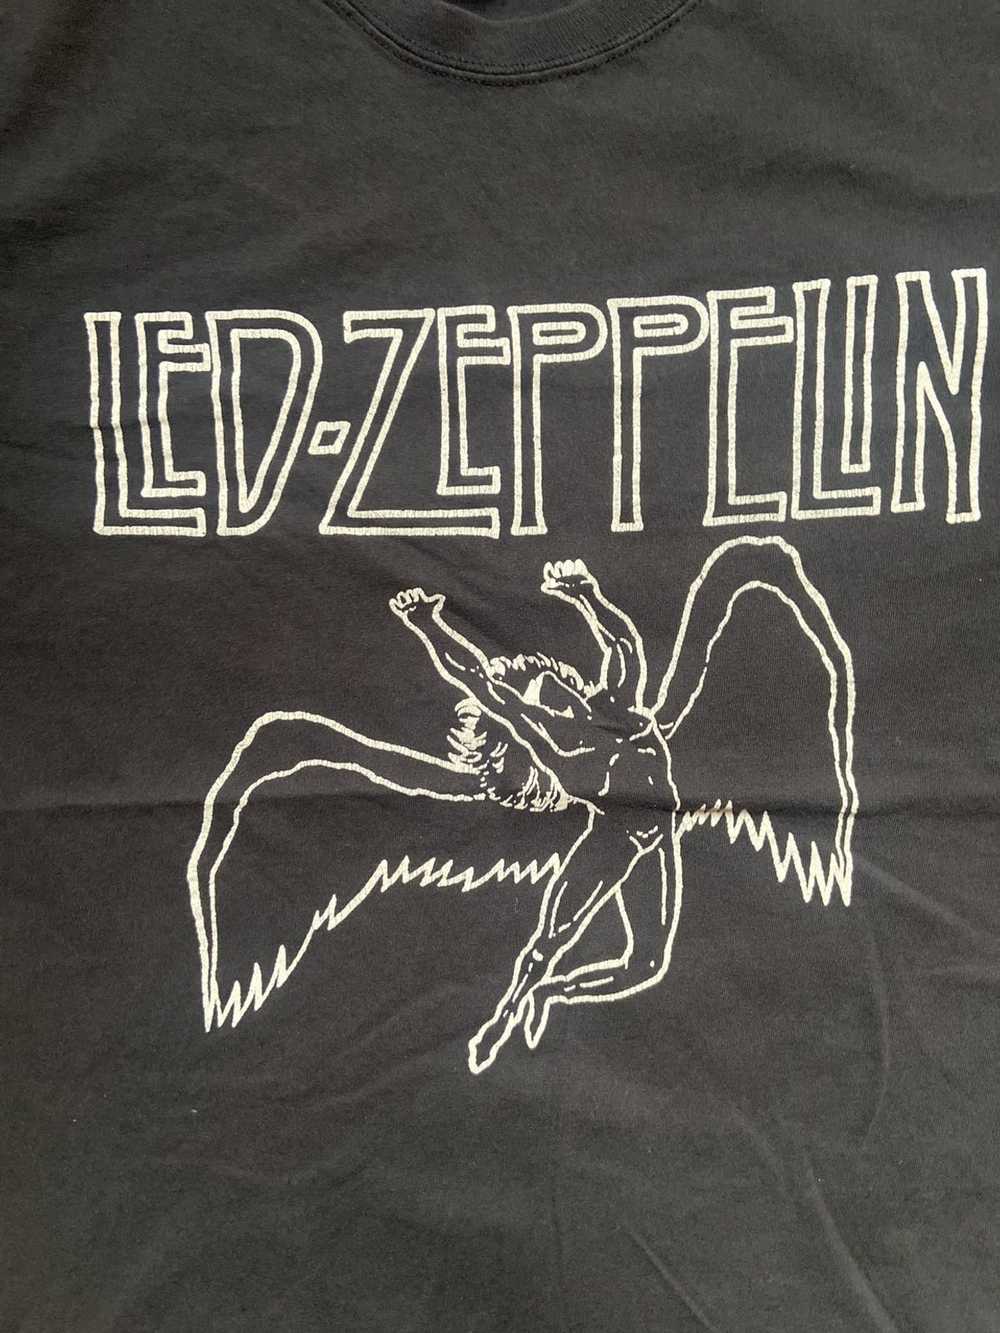 Vintage Led Zeppelin Vintage Band Tee - image 3